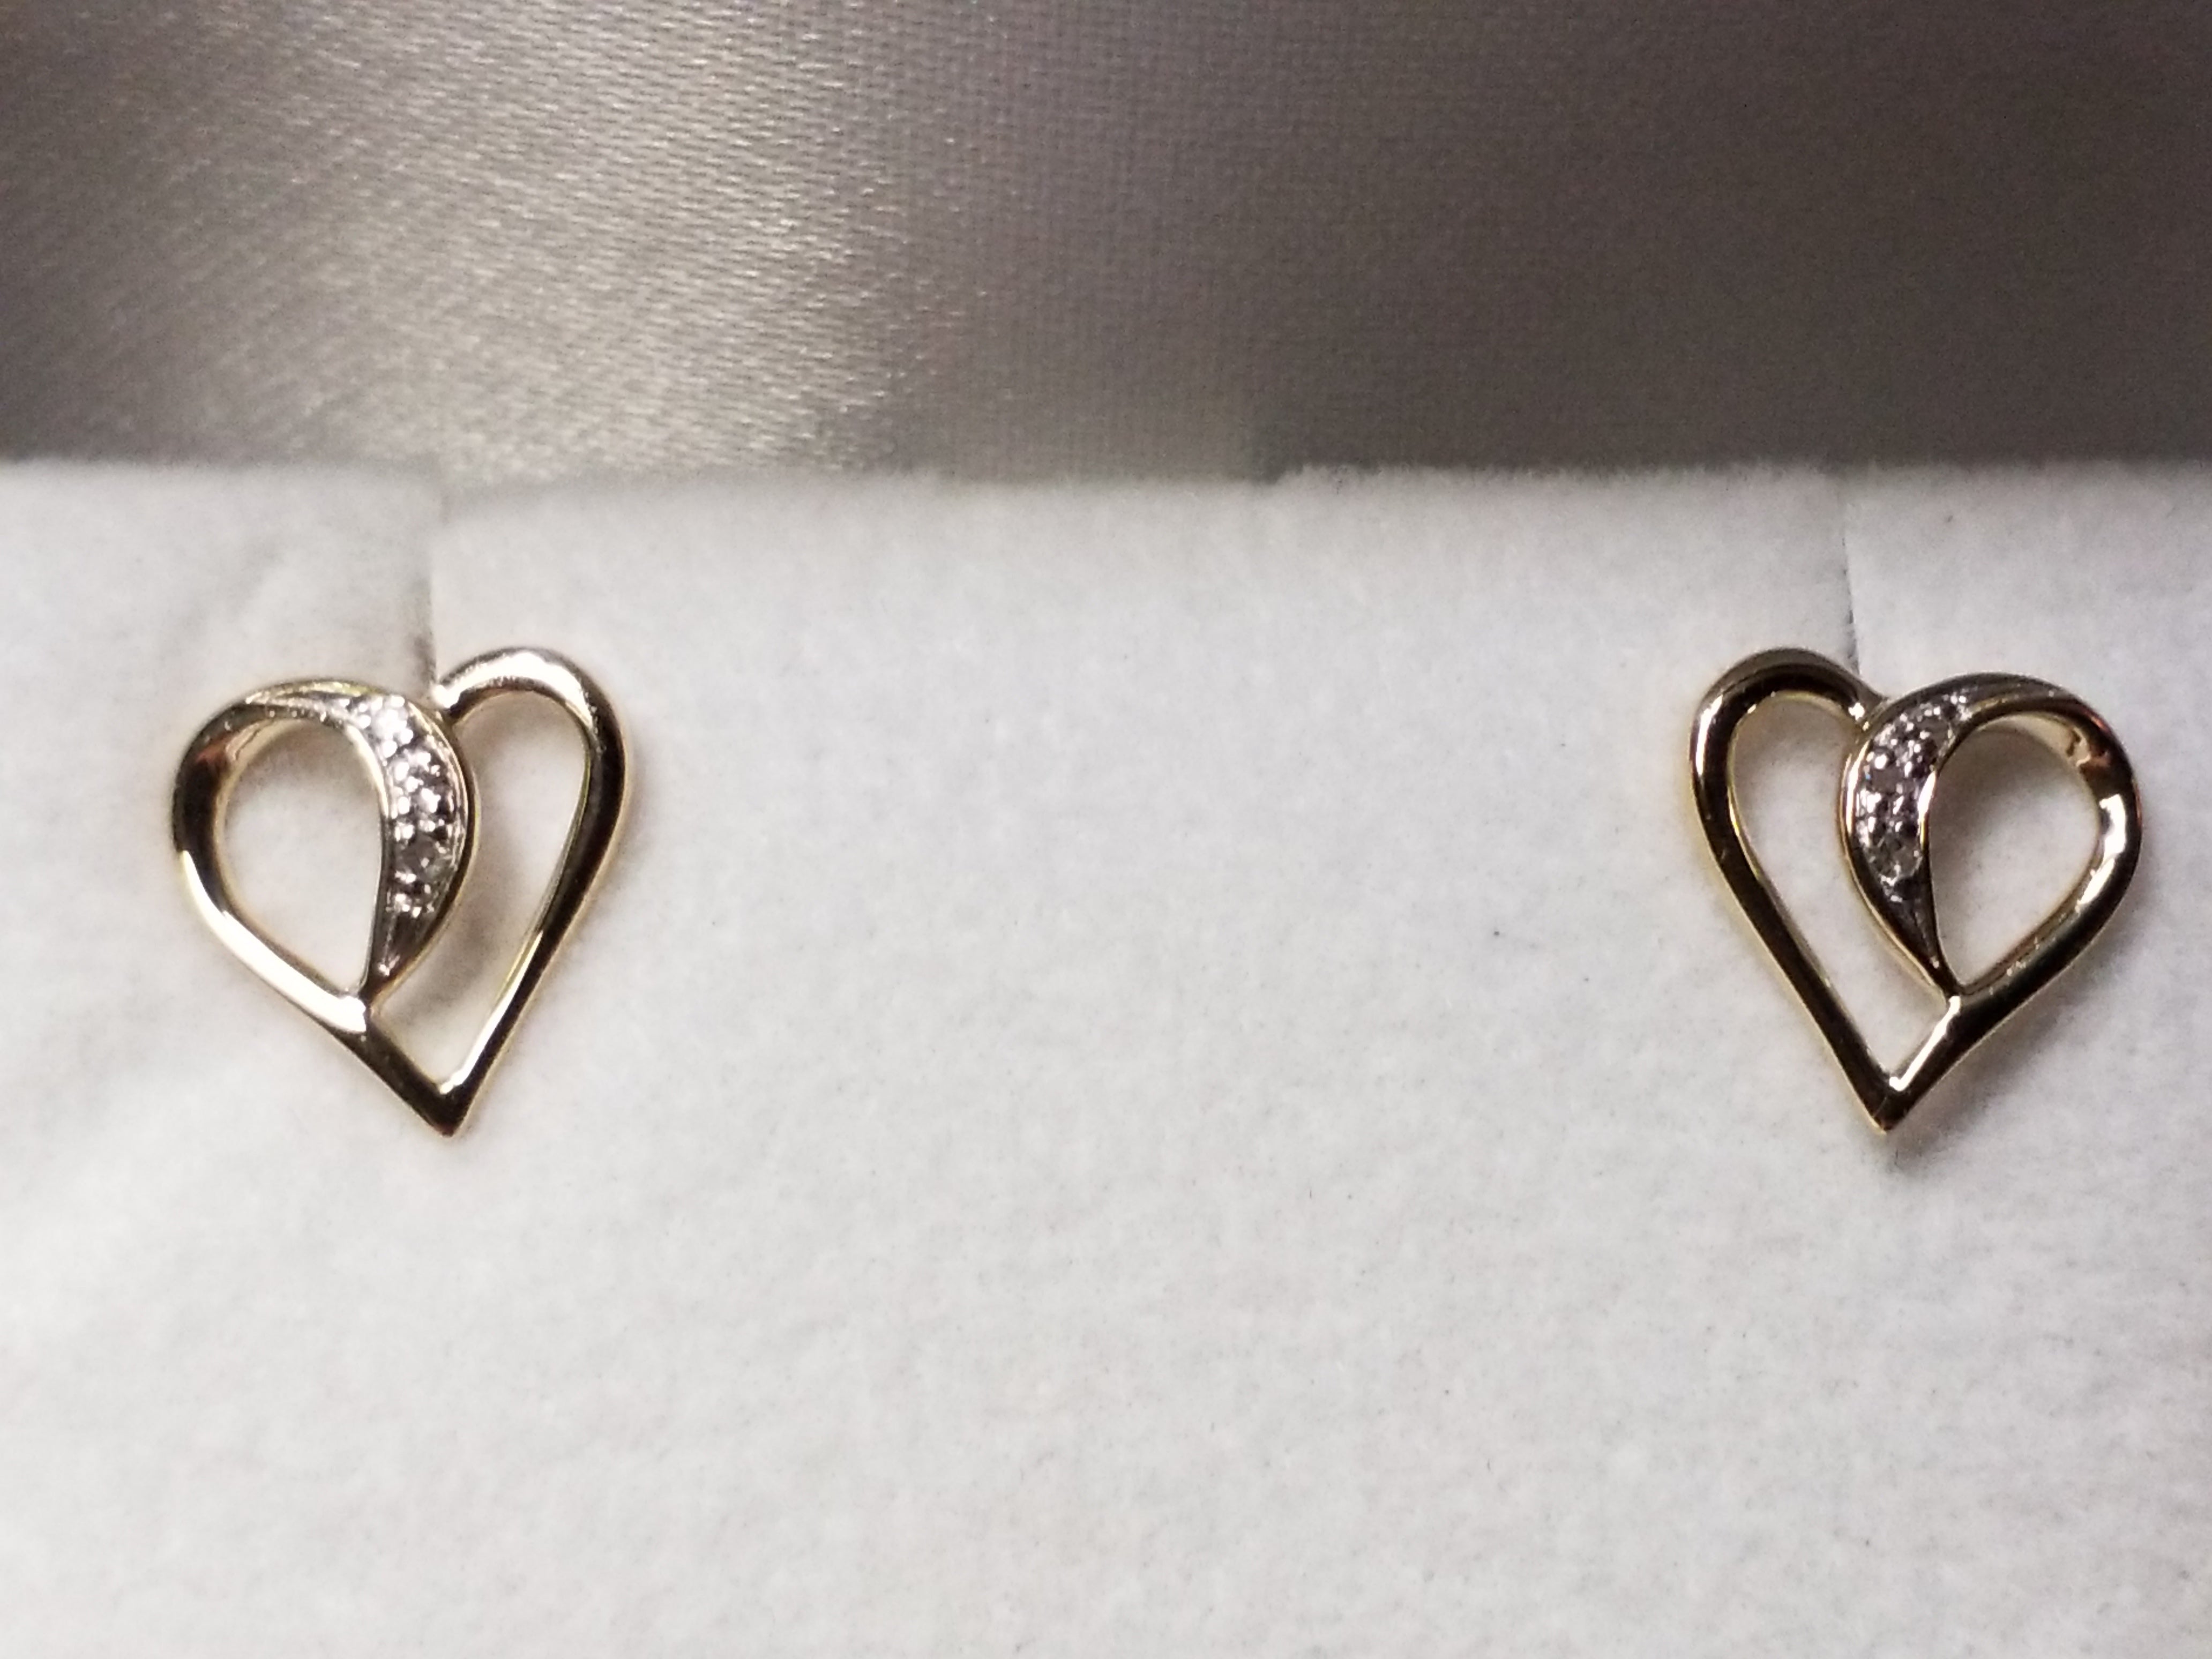 Diamond Earrings - Heart